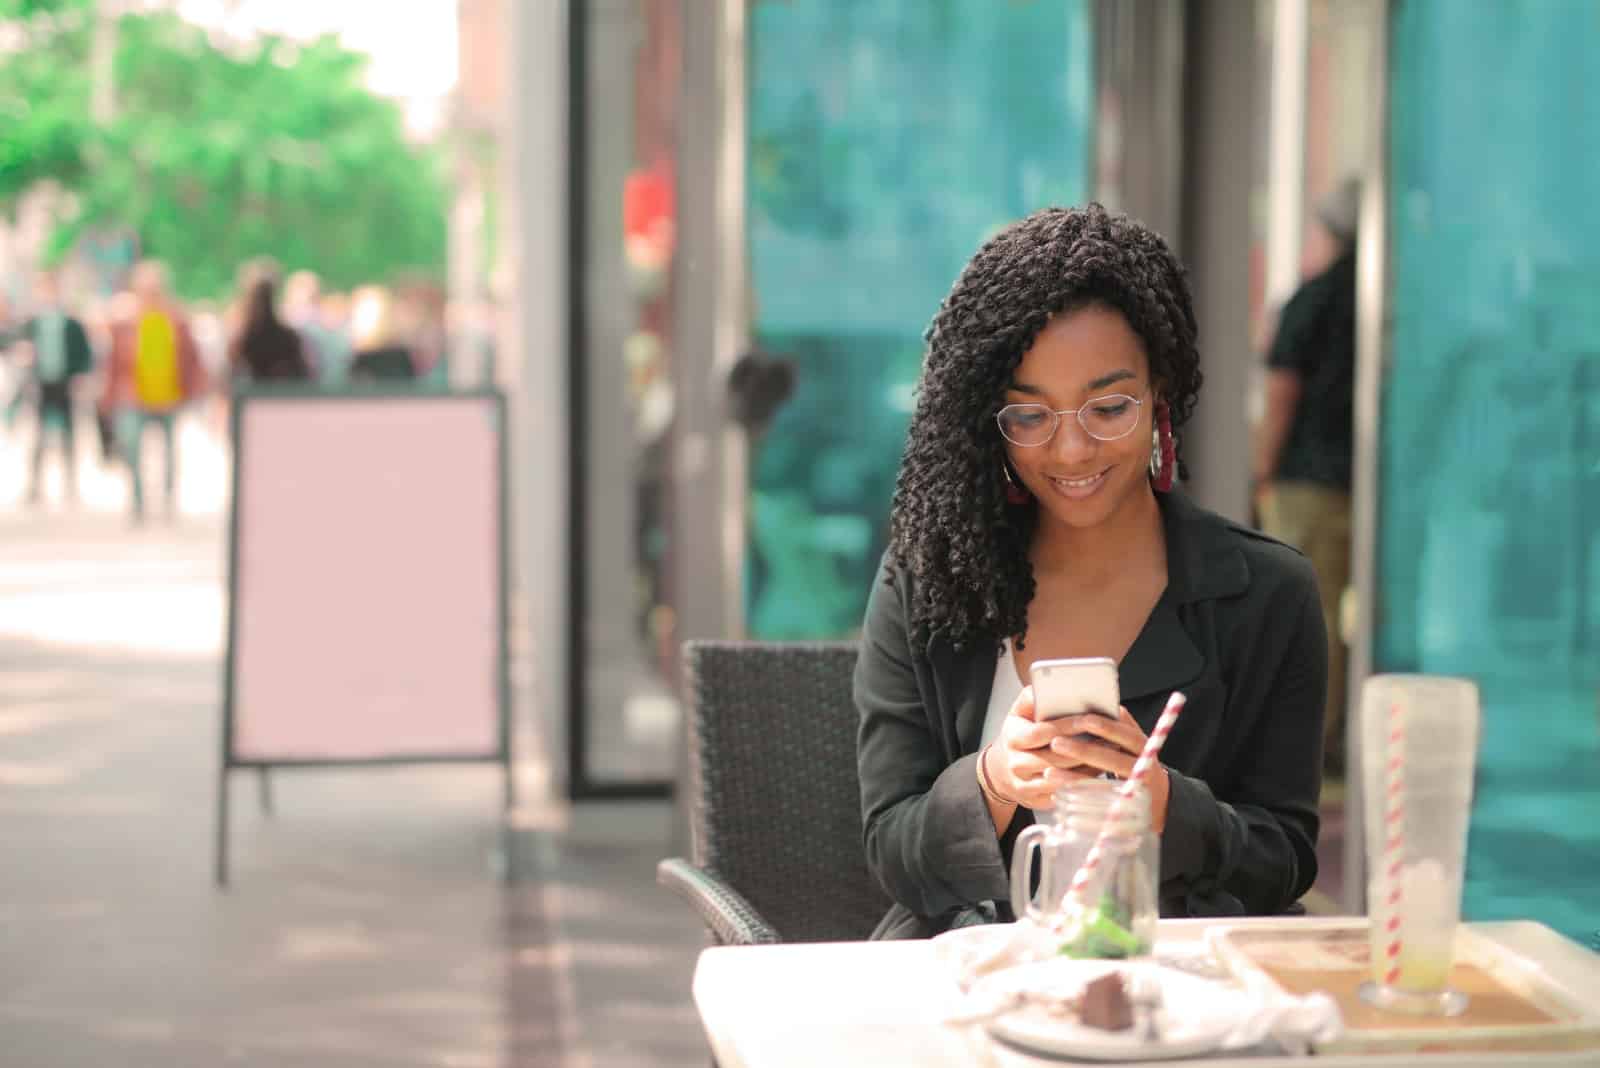 Femme utilisant un smartphone assise dans un café en plein air